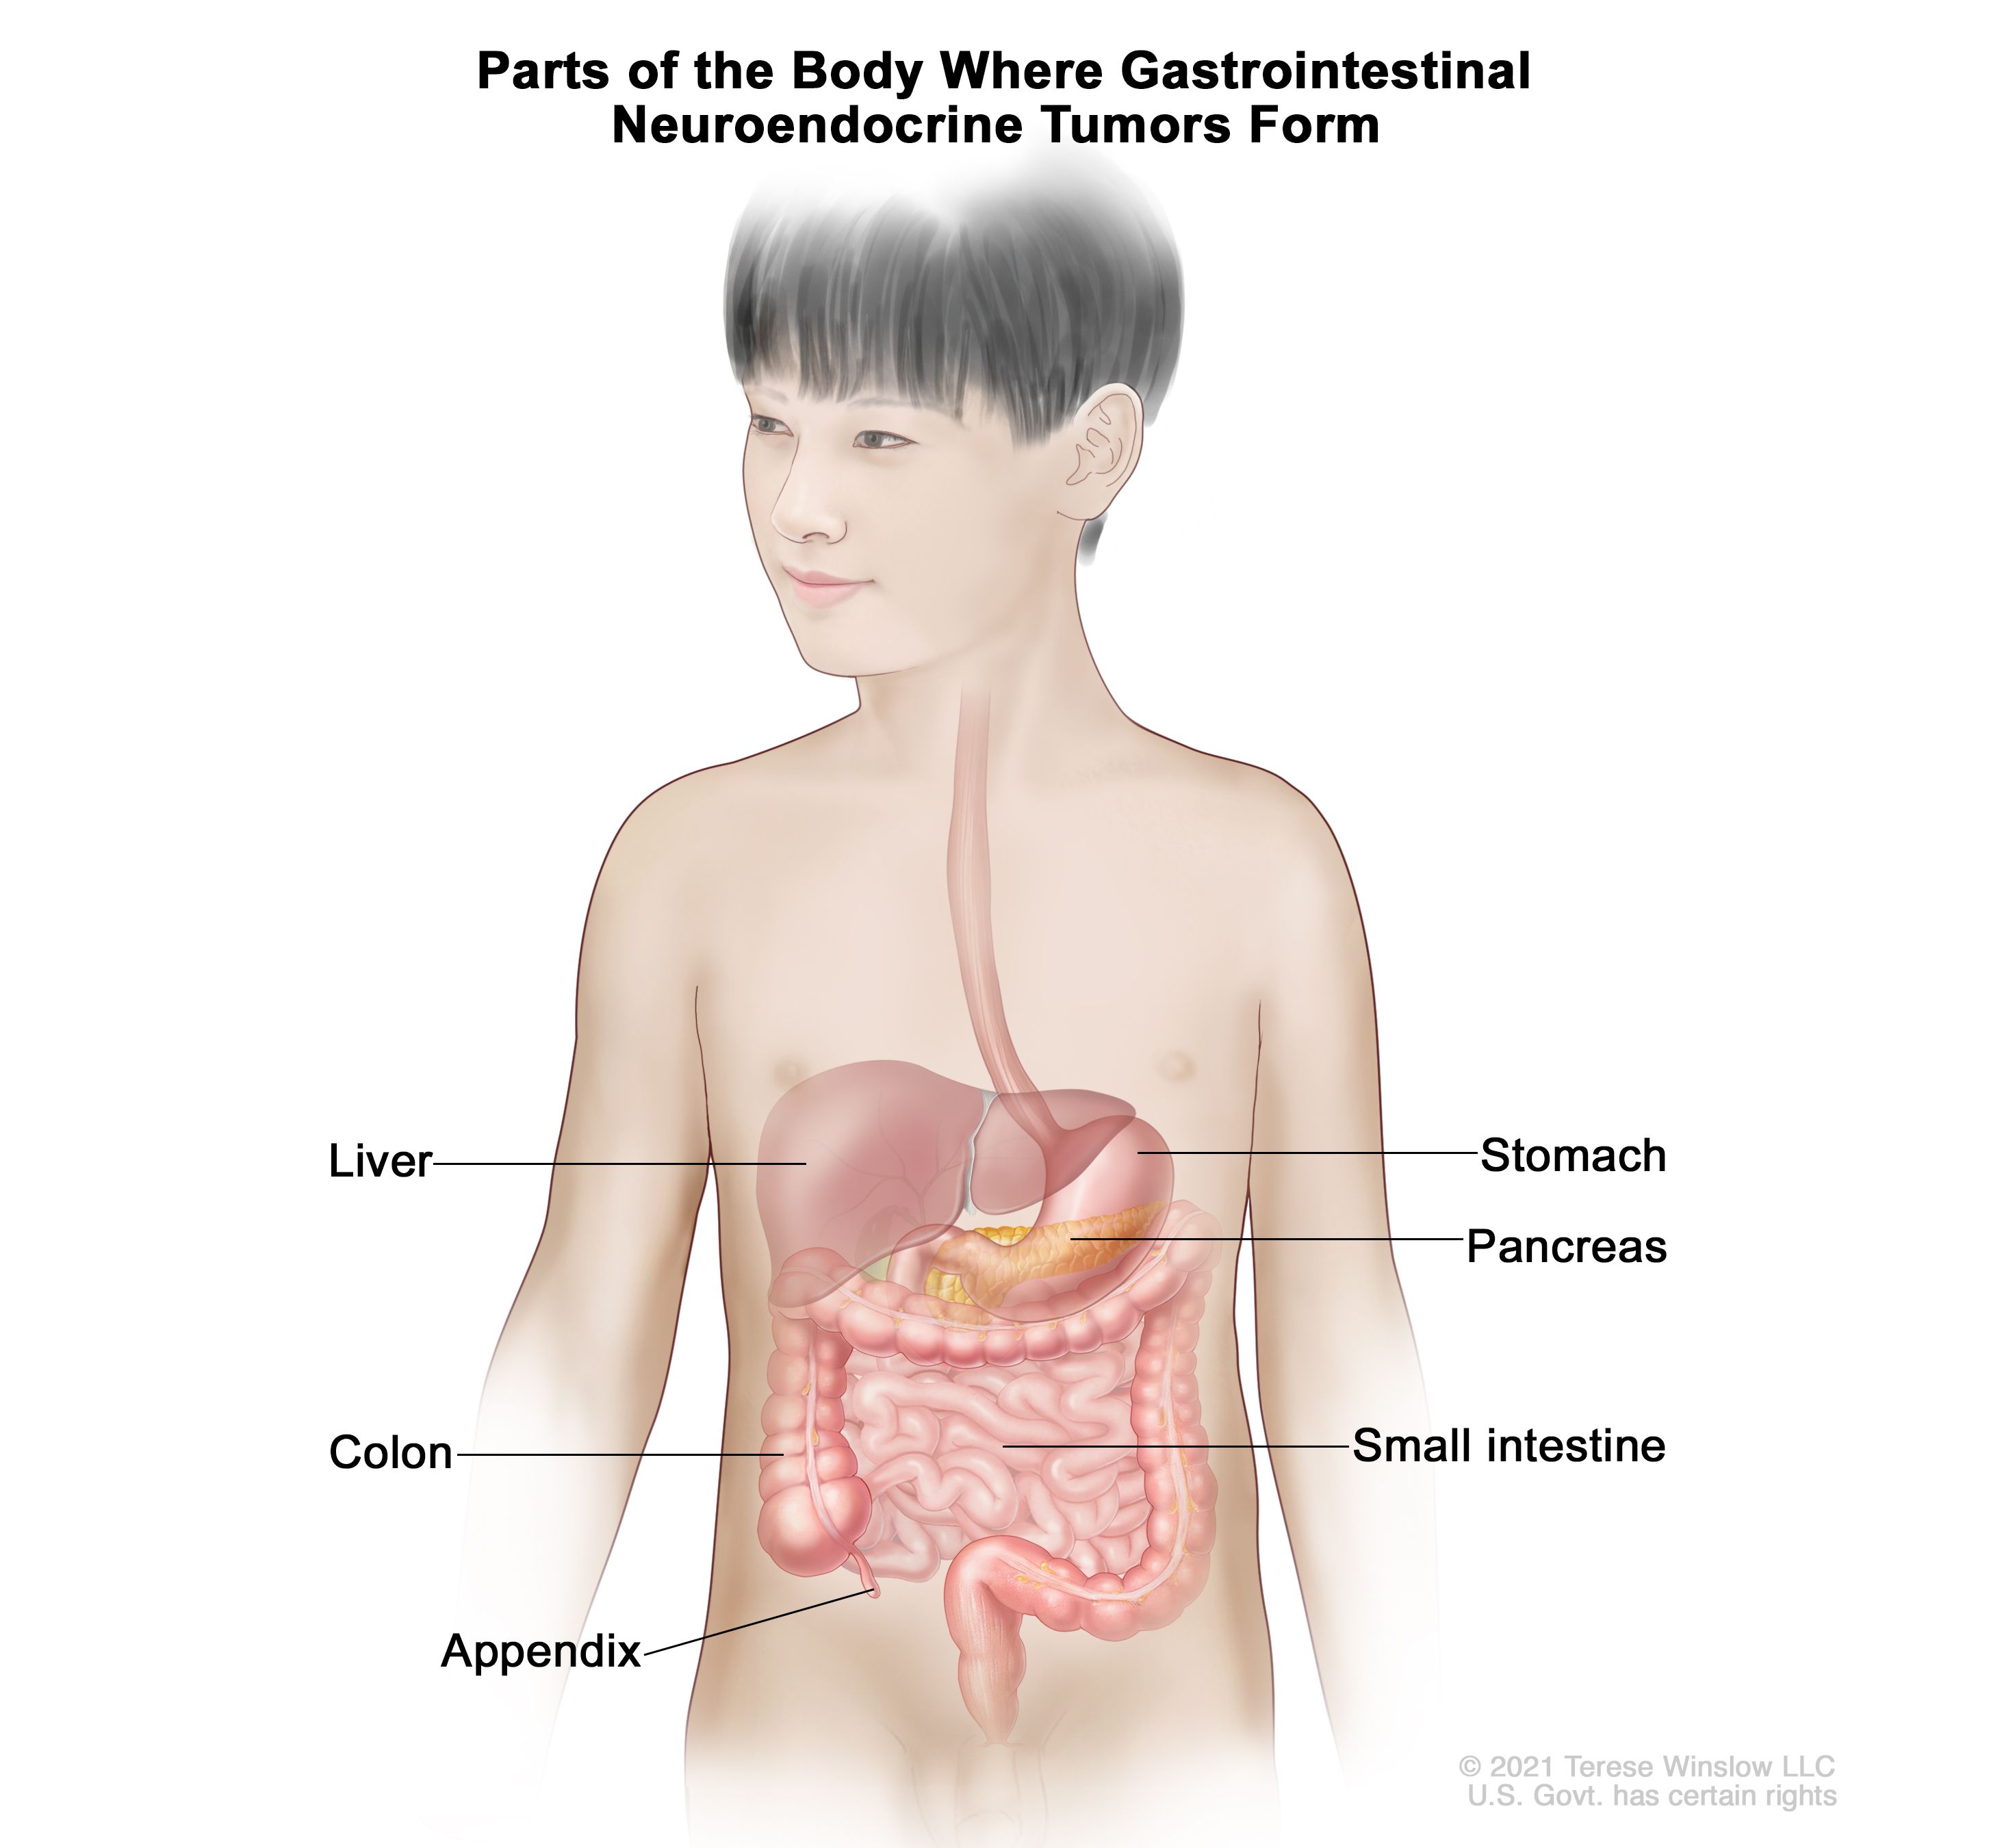 消化管カルチノイドが形成される身体部位：消化管の図に、肝臓、胃、膵臓、小腸、結腸、虫垂が示されている。